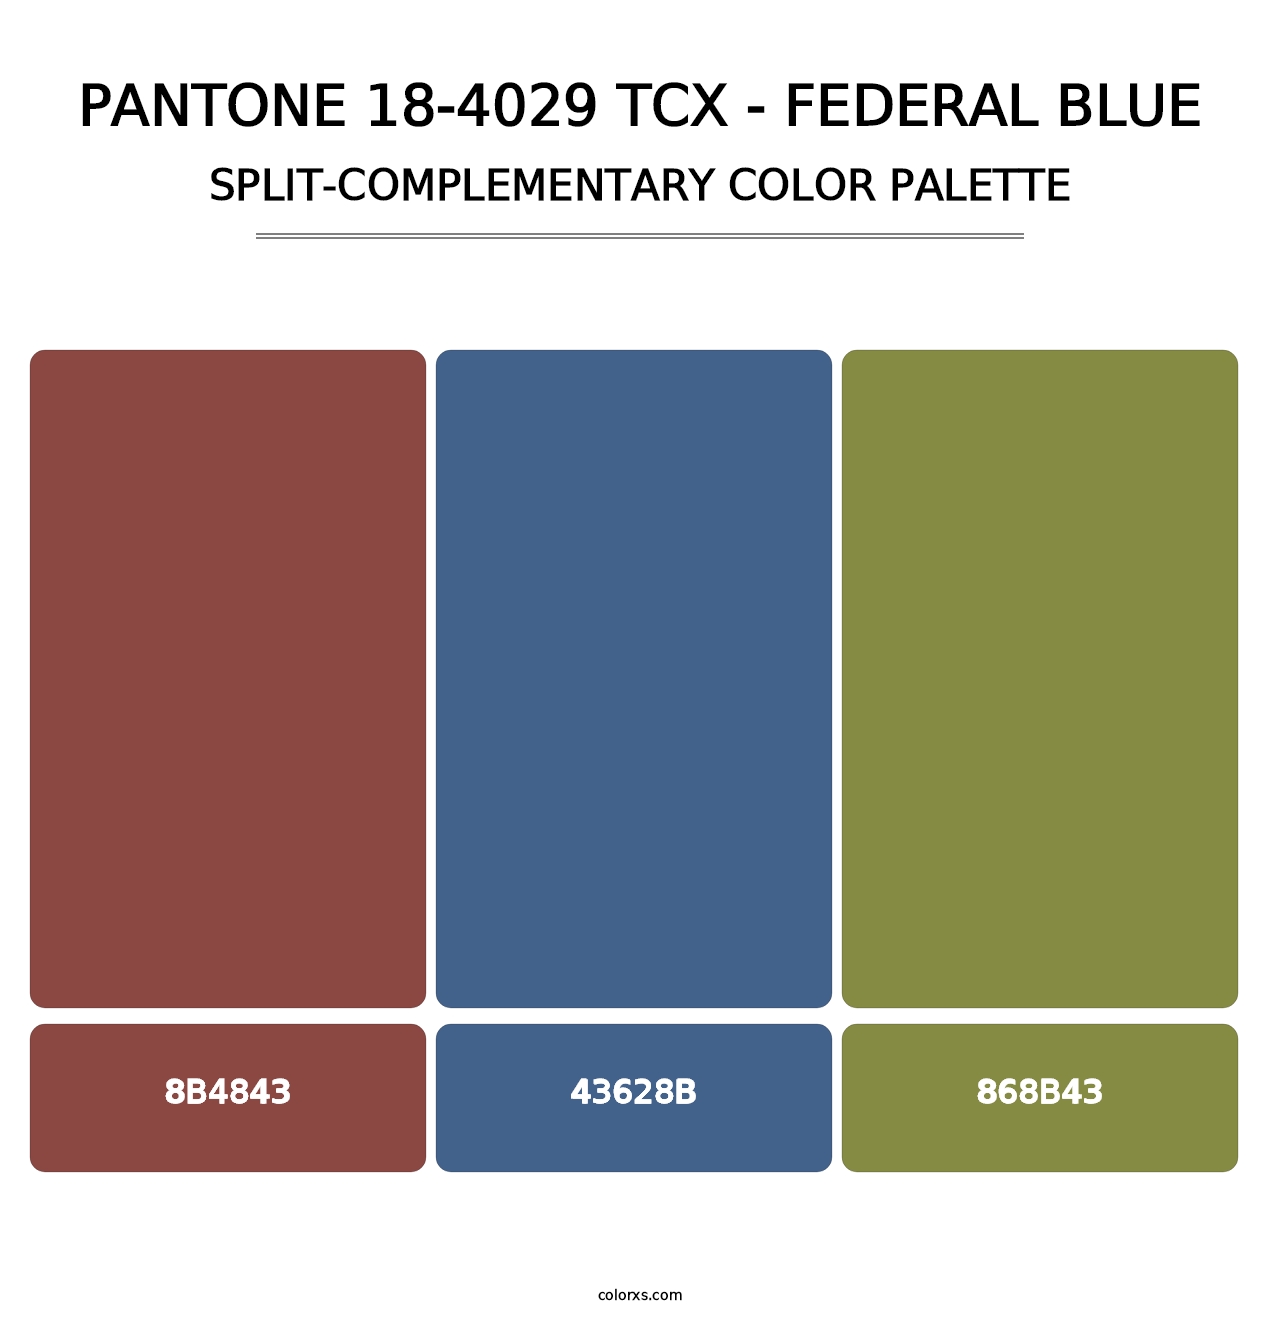 PANTONE 18-4029 TCX - Federal Blue - Split-Complementary Color Palette